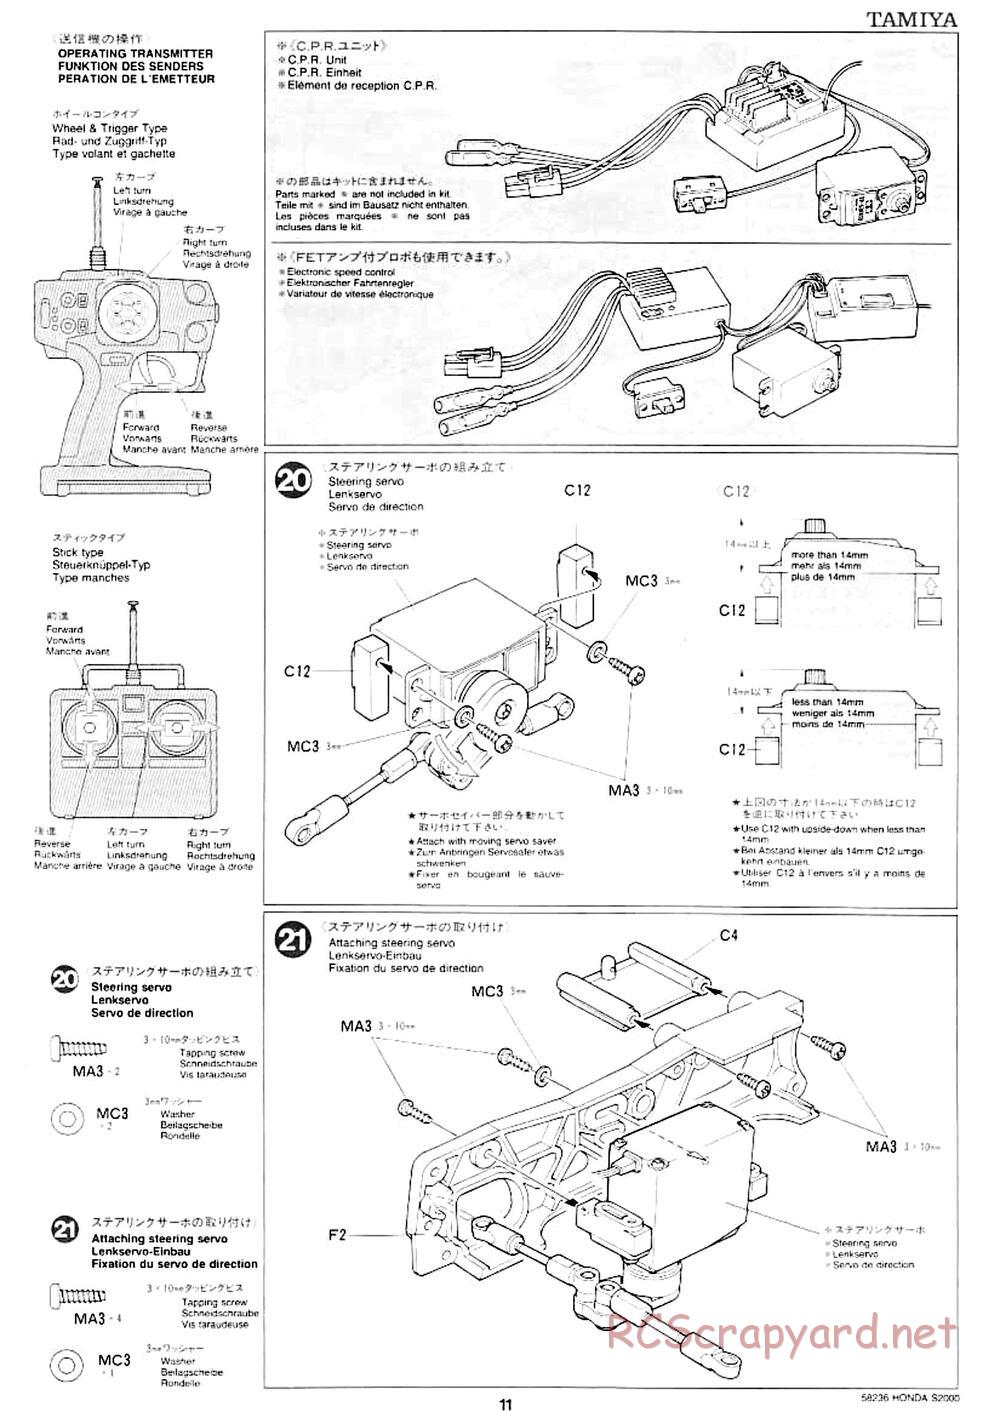 Tamiya - Honda S2000 - M04L Chassis - Manual - Page 9